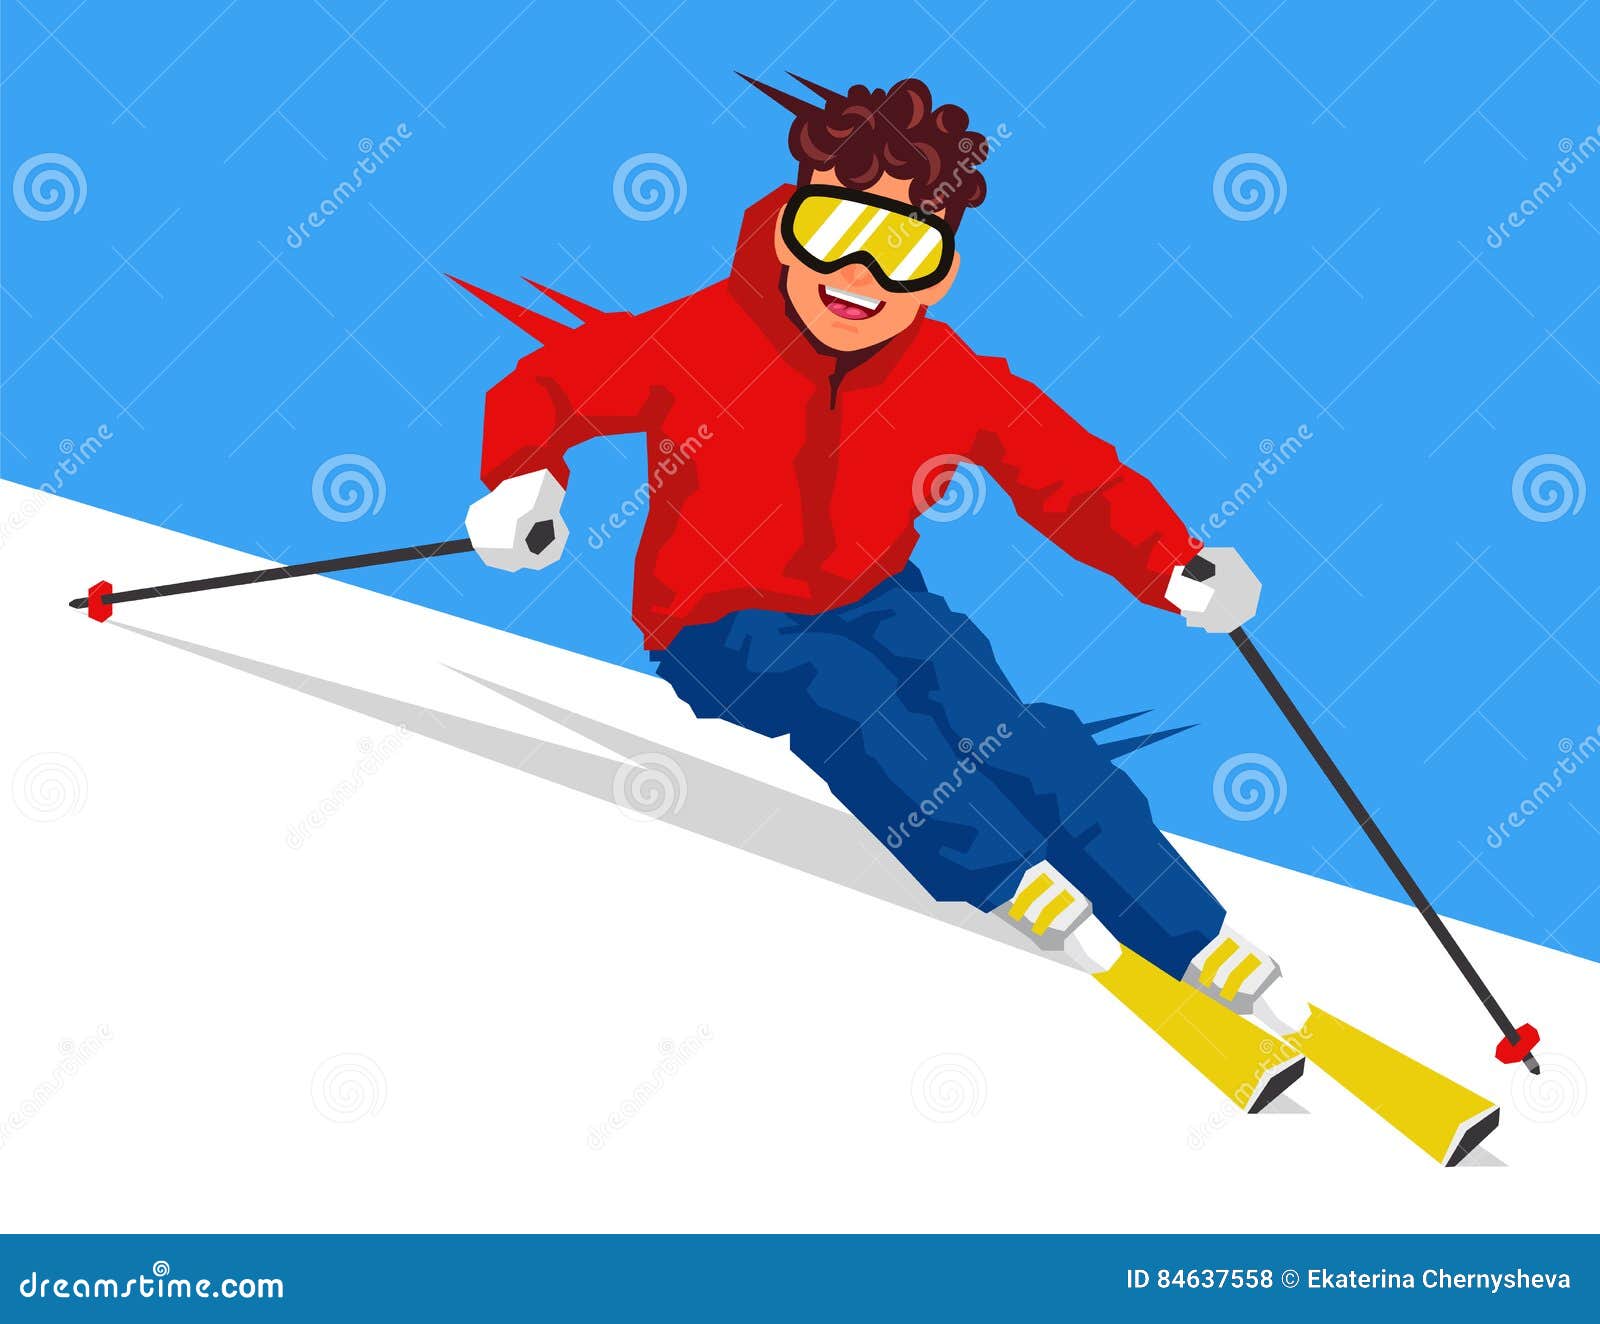 Лыжник шел на лыжах. Лыжник катится с горы. Лыжник катится с горы на лыжах. Лыжник спускетс я с горки. Человек скатывается с горы на лыжах.